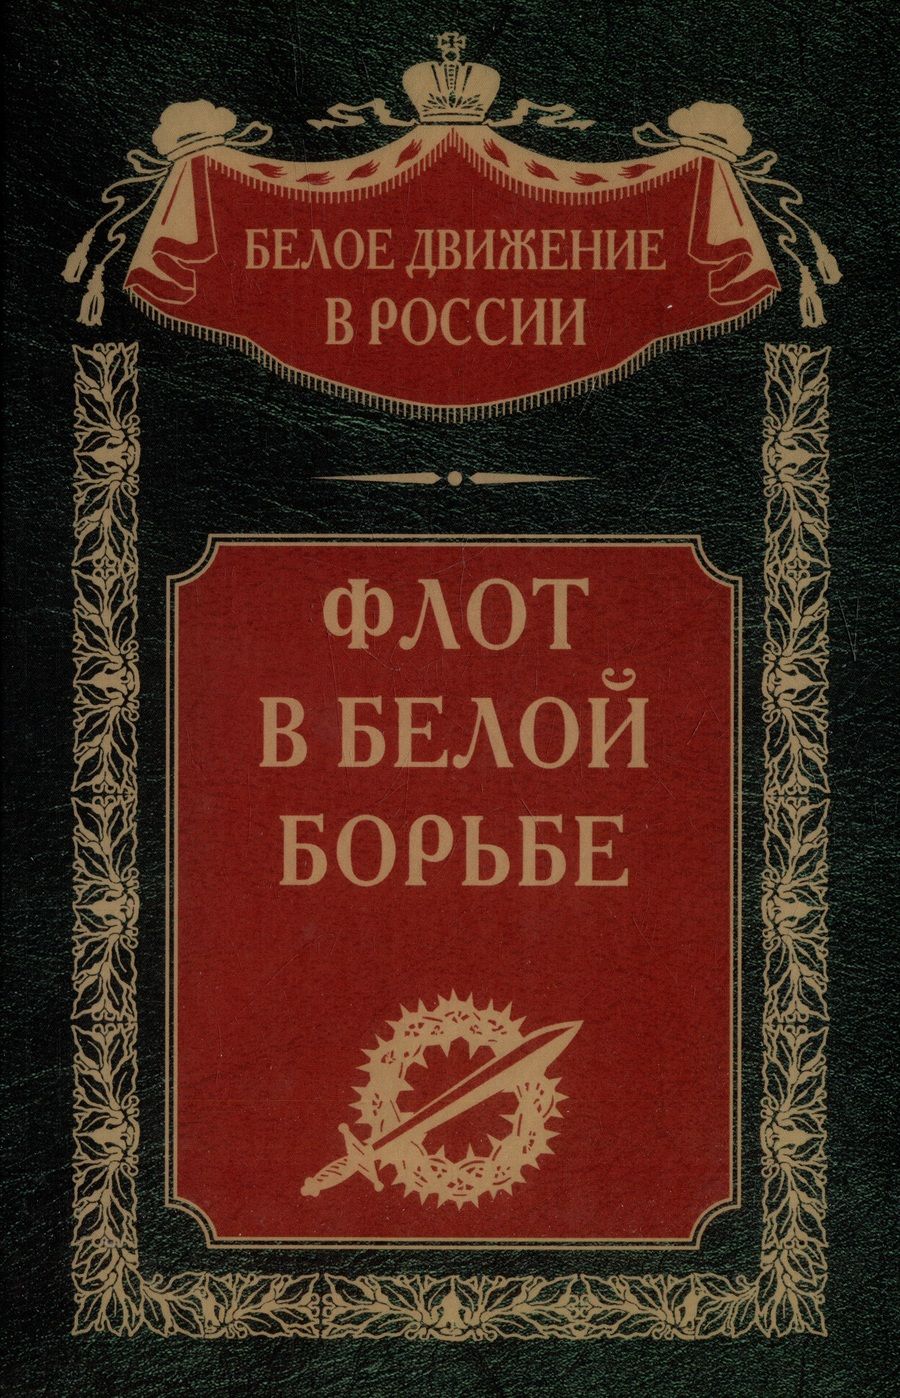 Обложка книги "Флот в Белой борьбе"